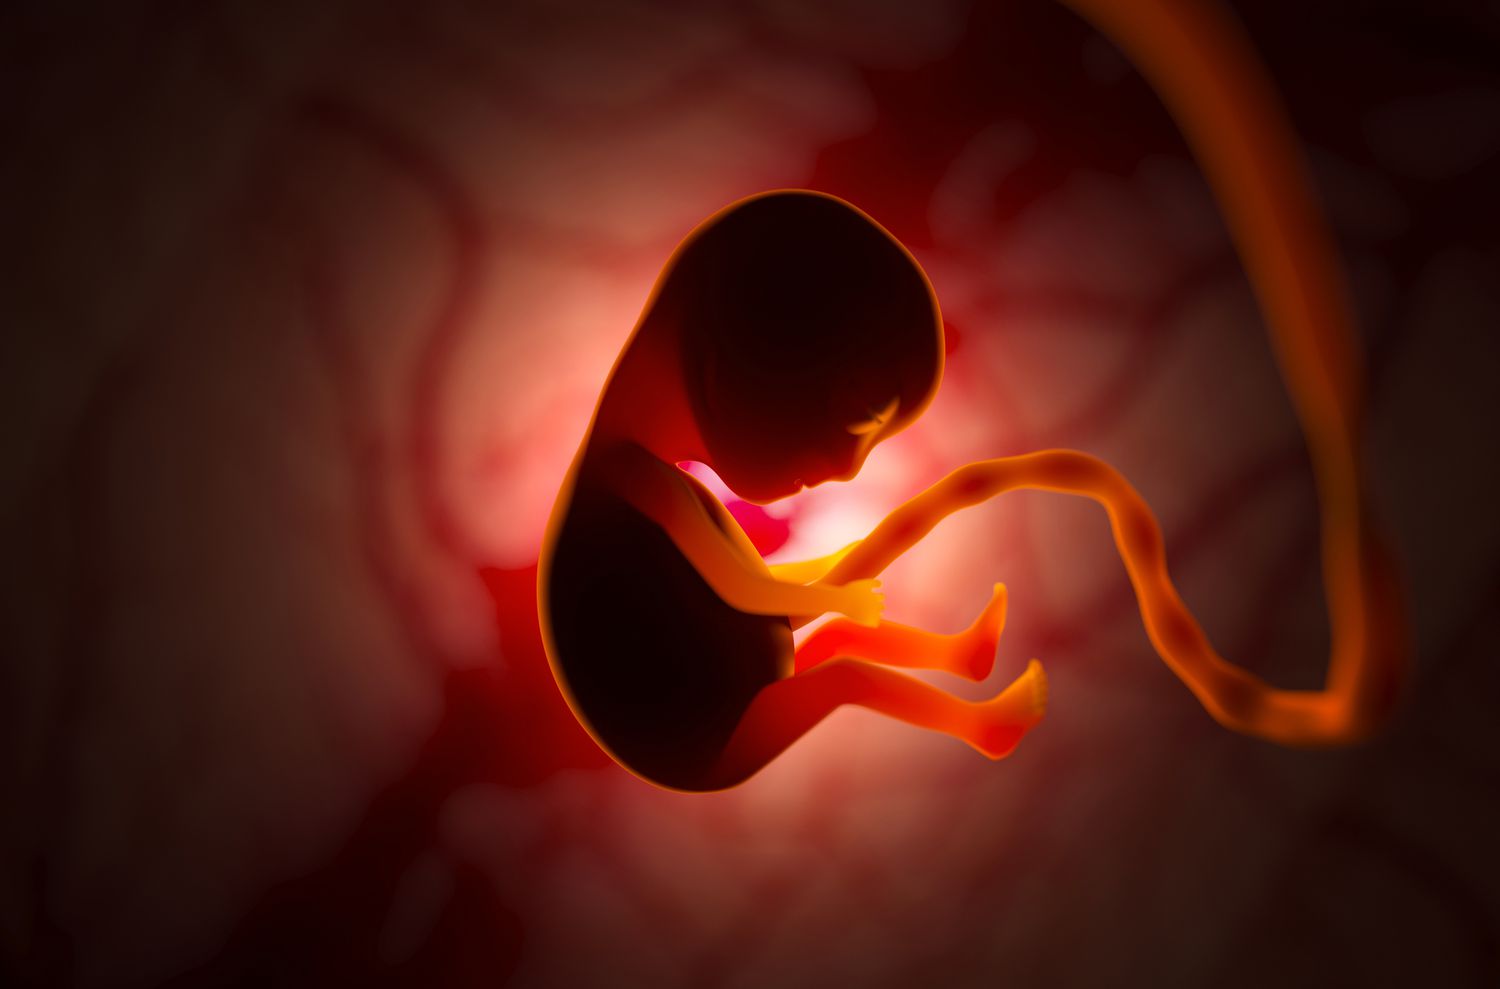 مراحل رشد جنین در شکم مادر